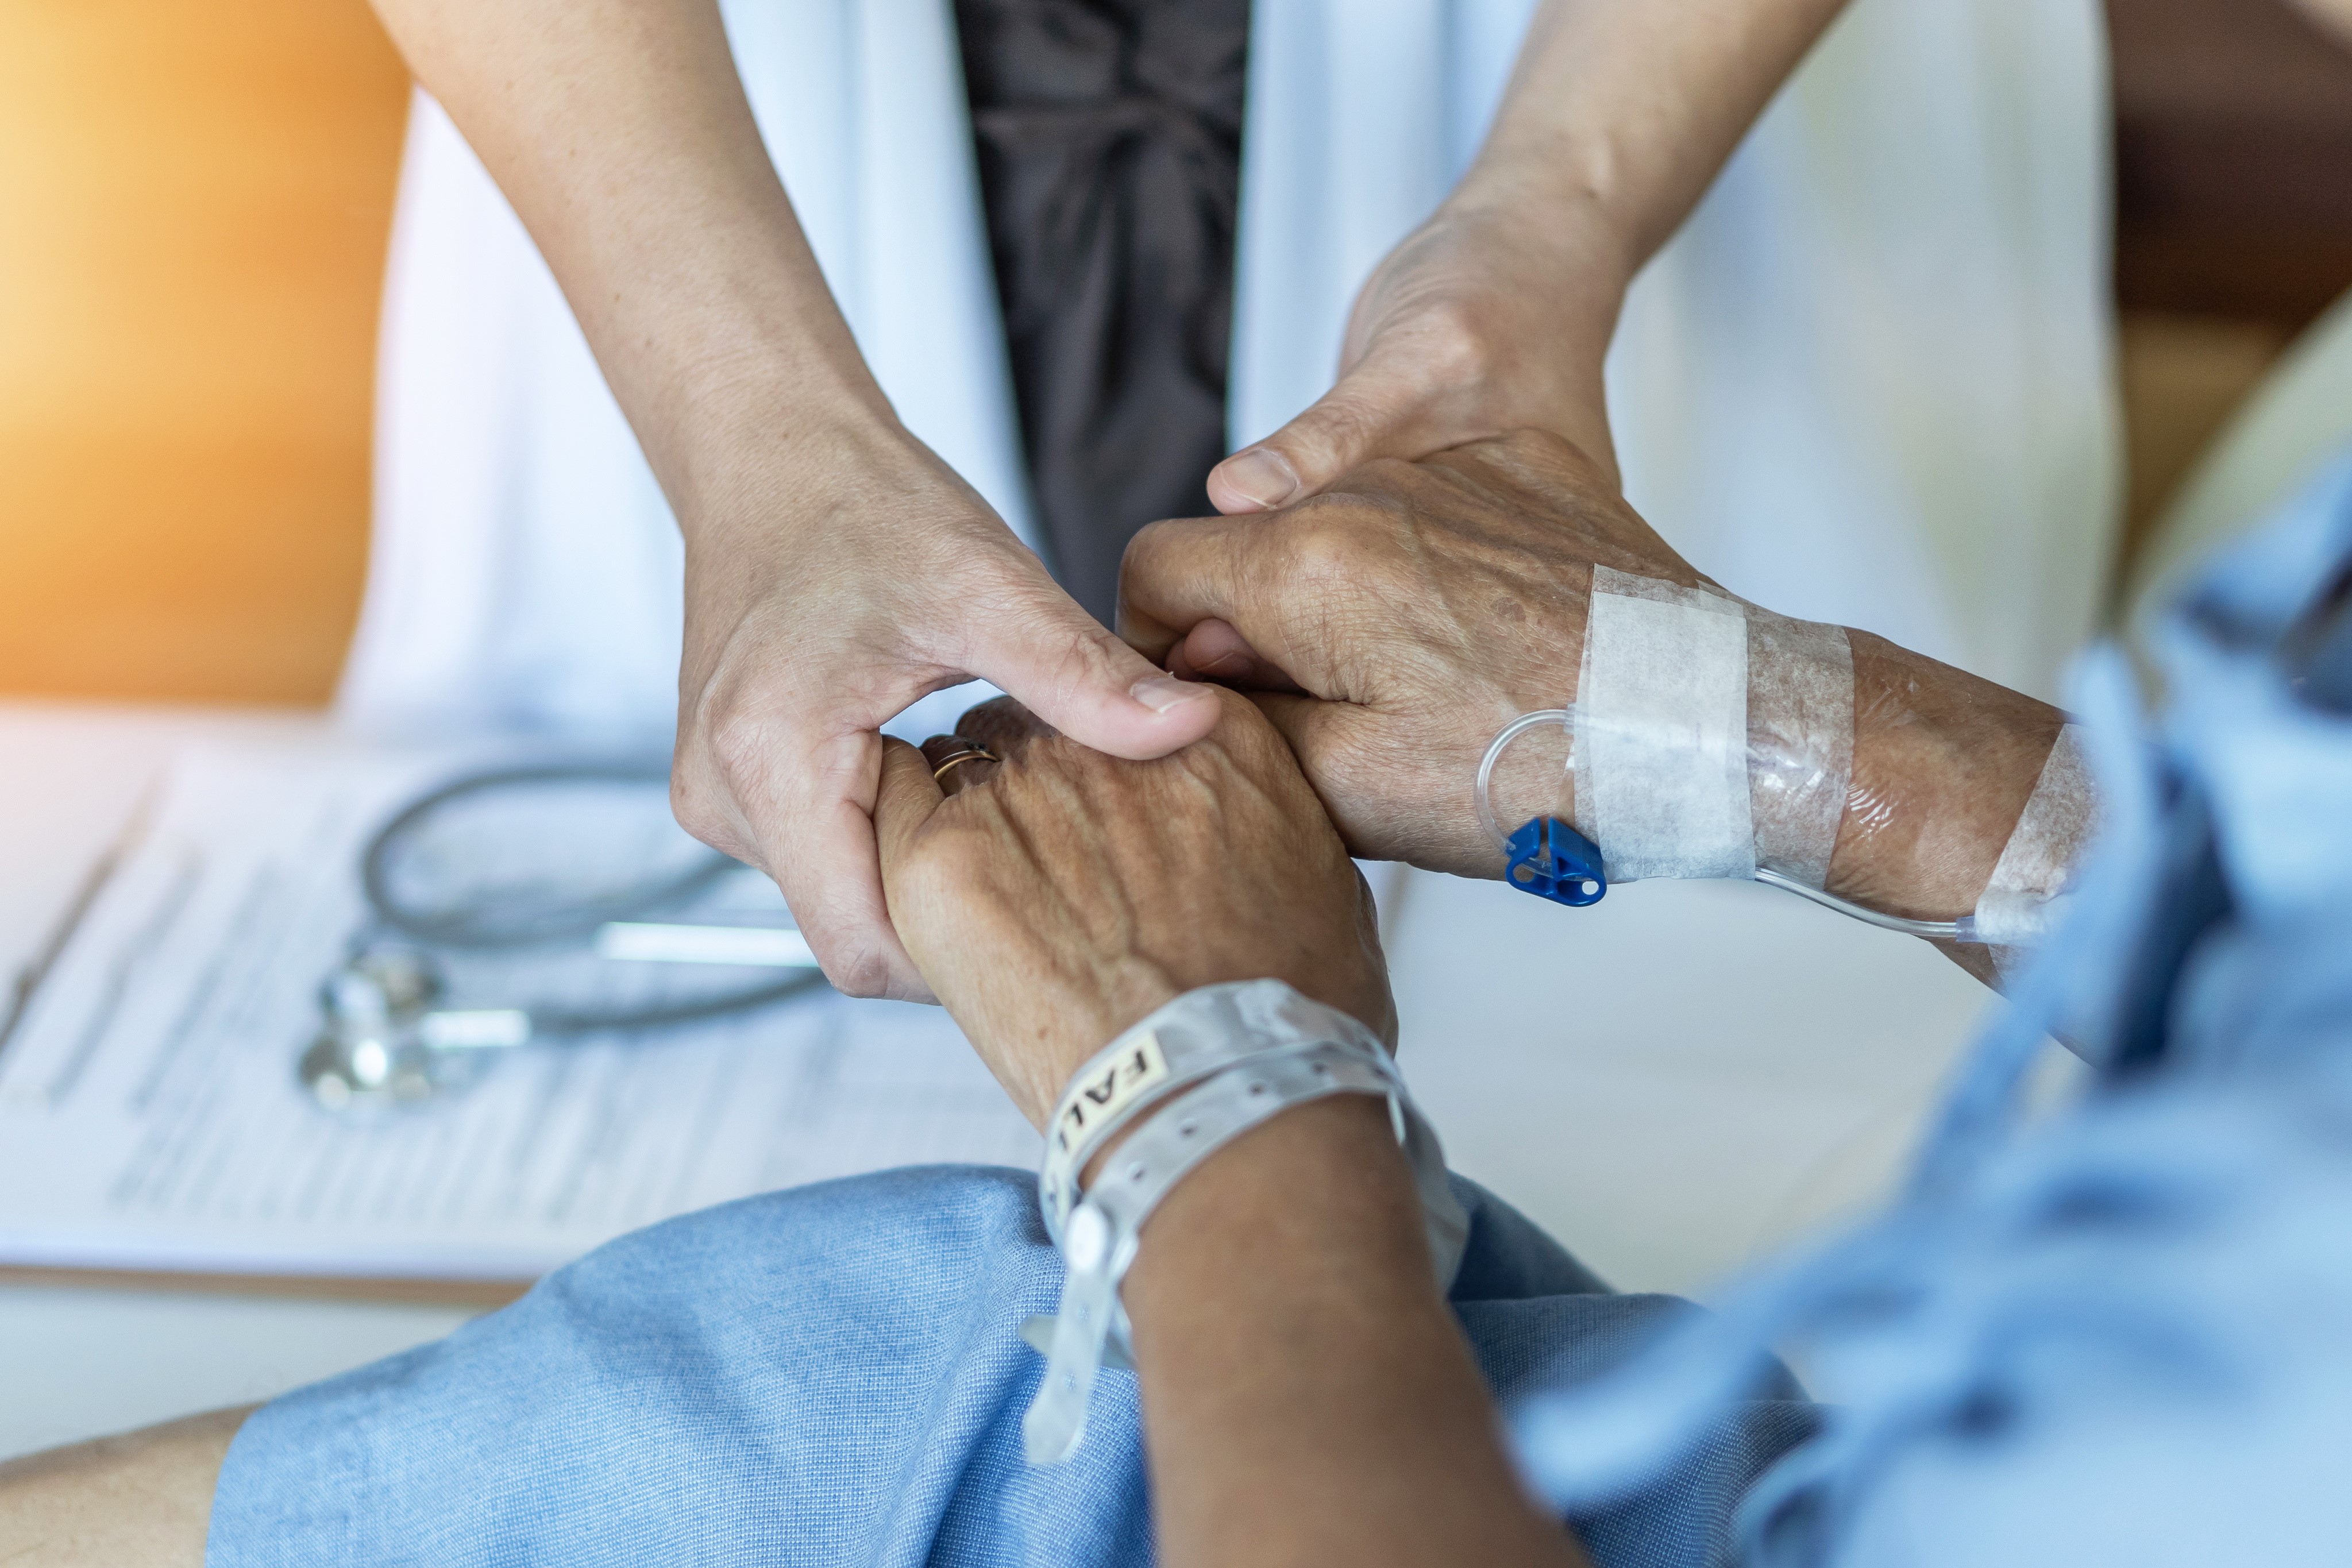 Sédation palliative continue, une autre façon de mourir dans la dignité